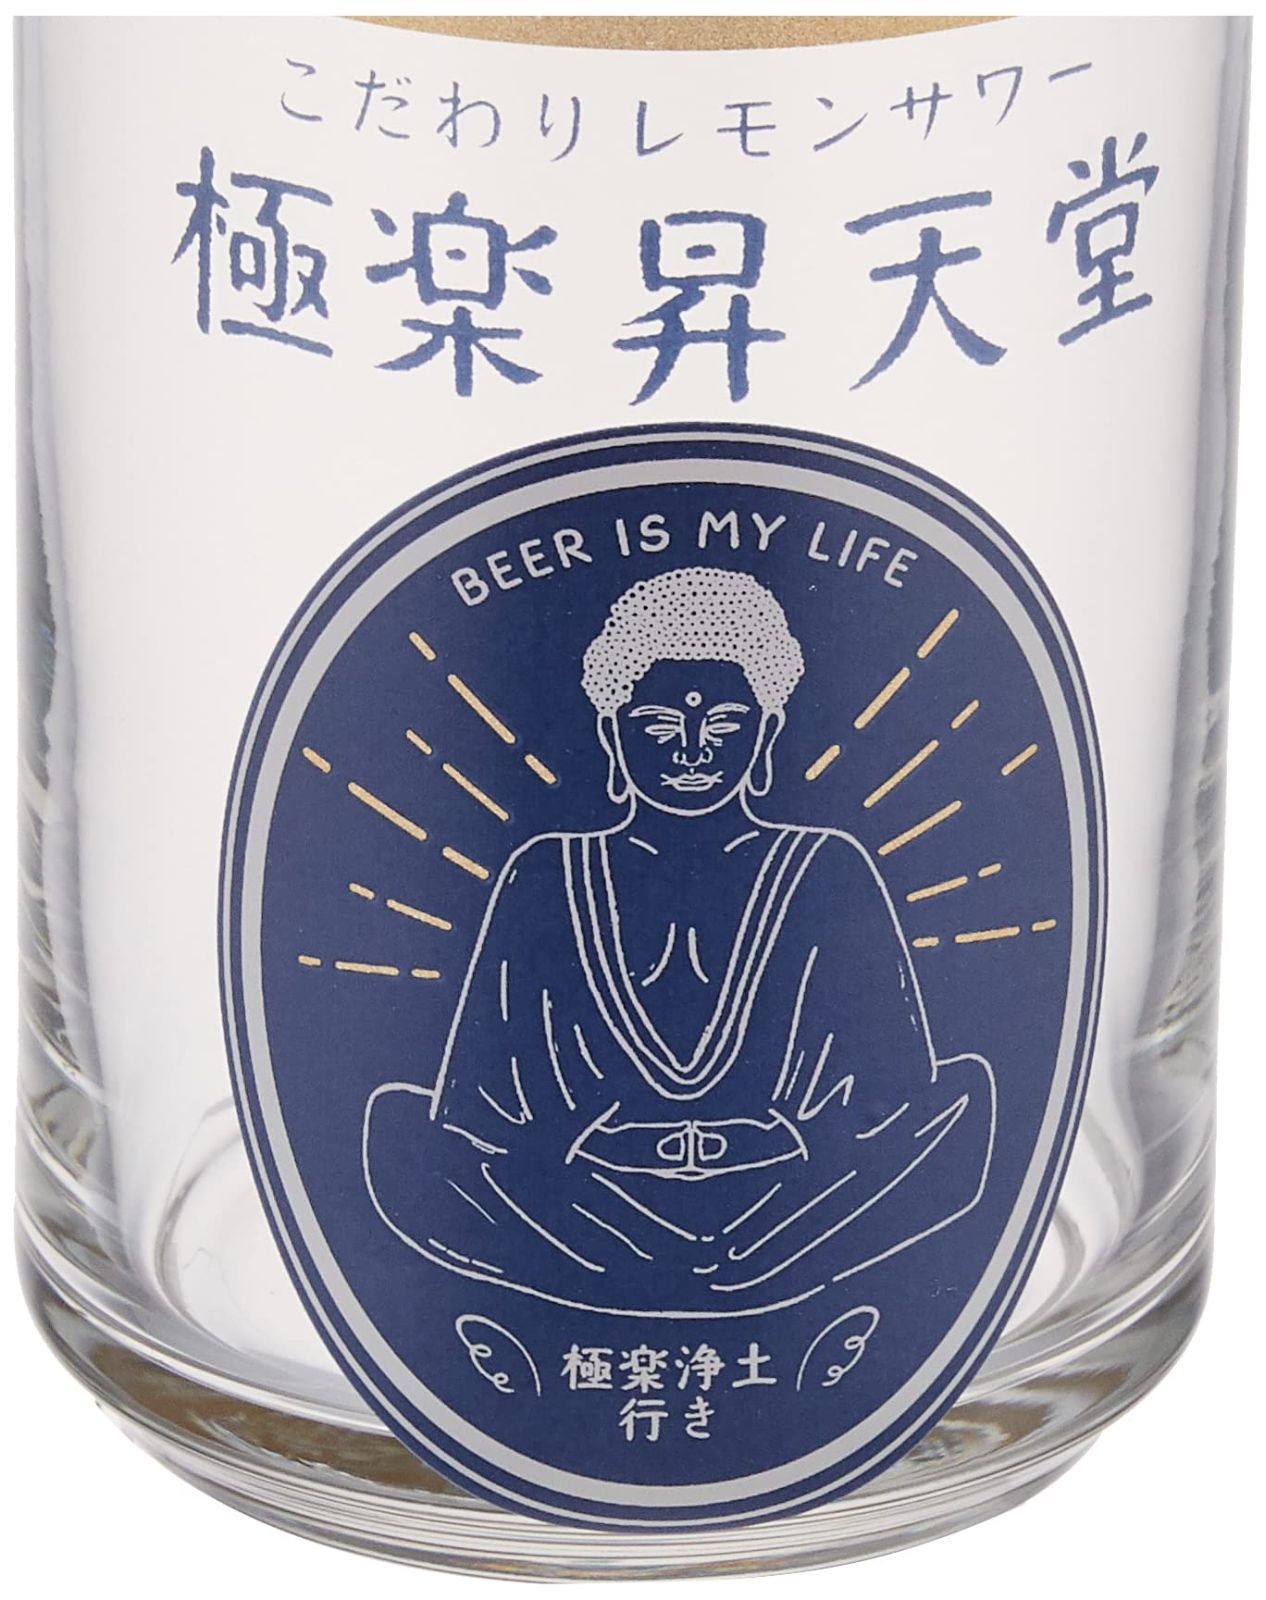 新着商品サンアート おもしろ食器 缶型 ガラス グラス 約360ml レモンサワー 日本製 SAN3882-1 暮らしを便利に メルカリ